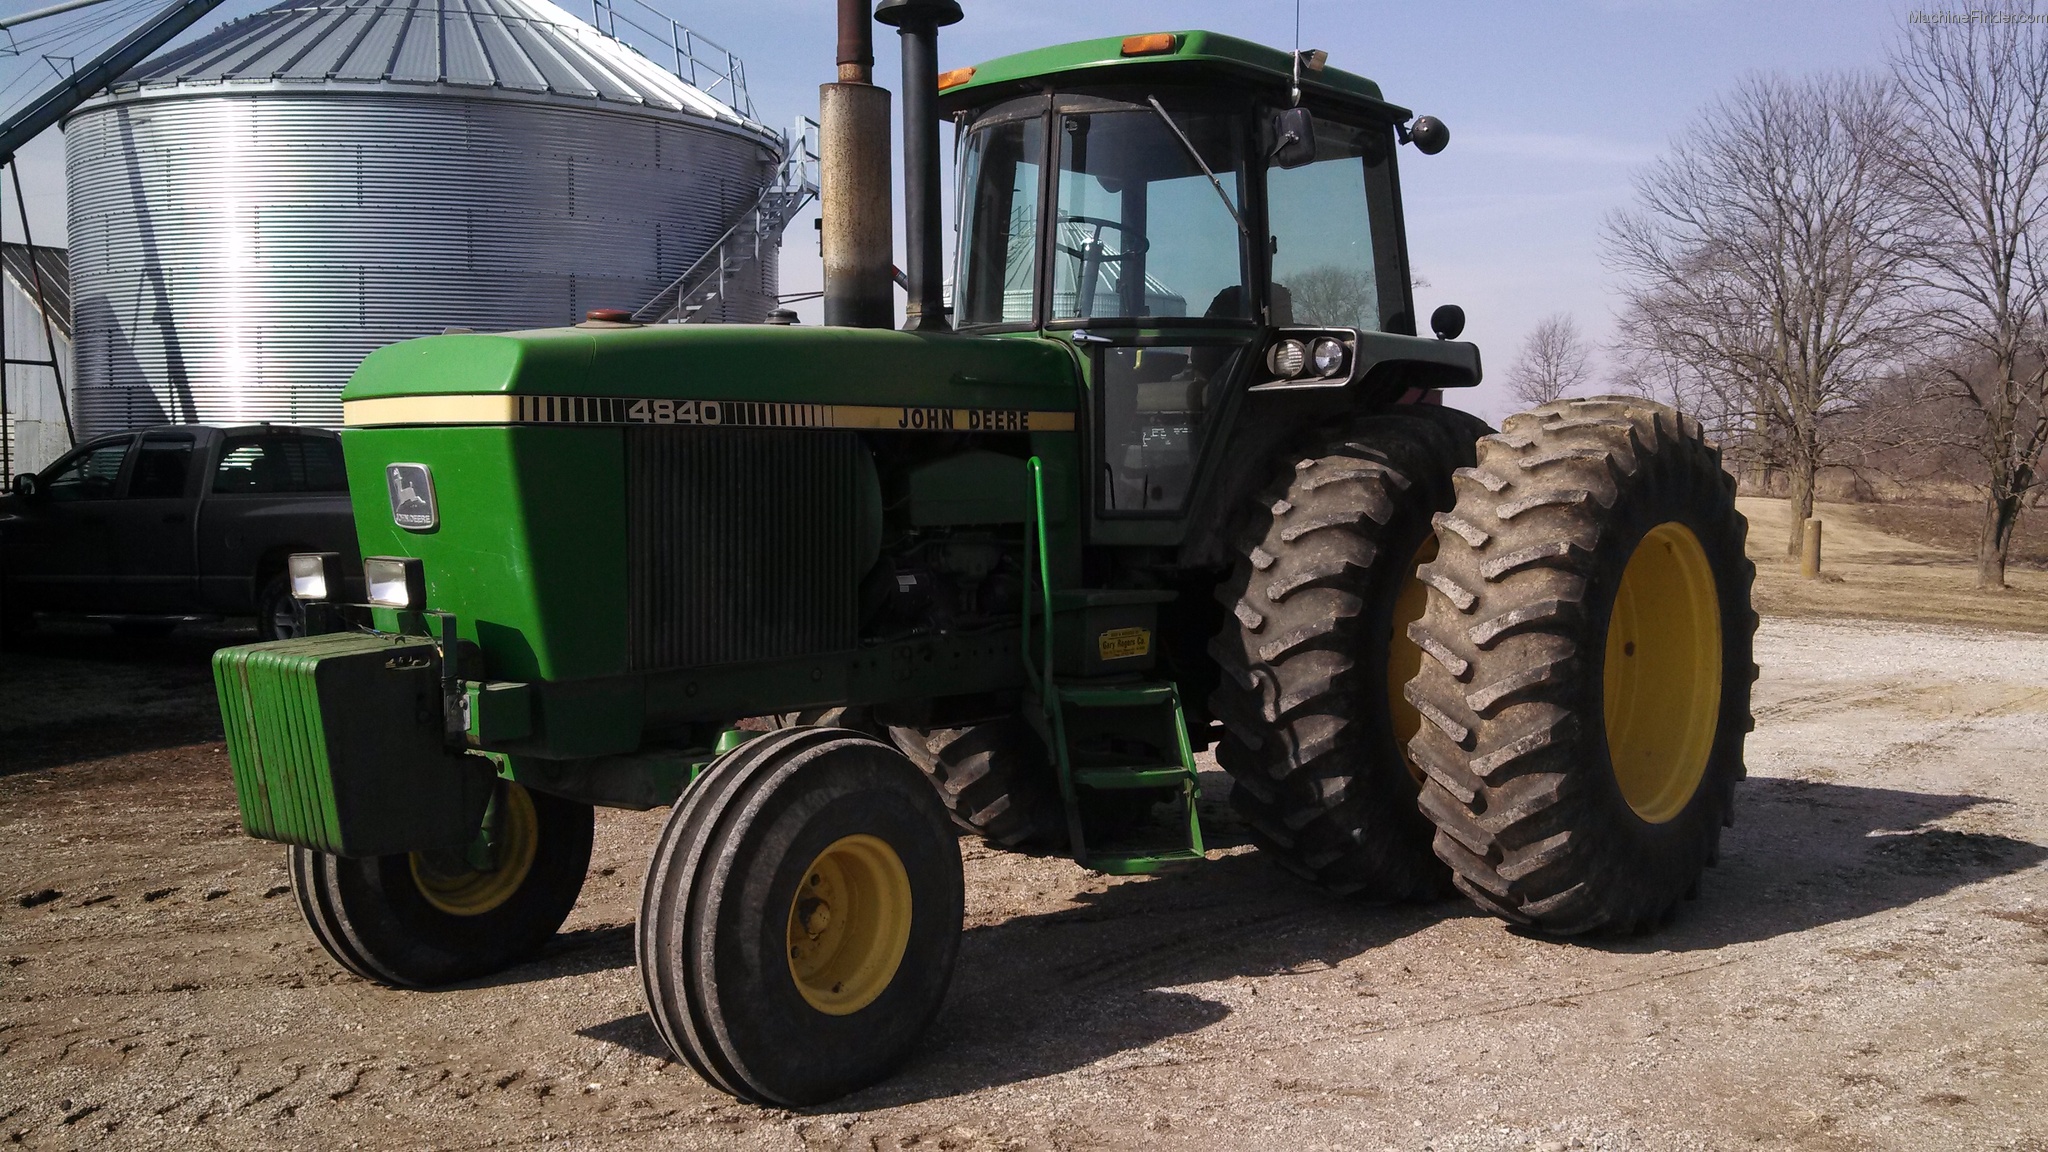 John Deere 4840 Tractors - Row Crop (+100hp) - John Deere ...